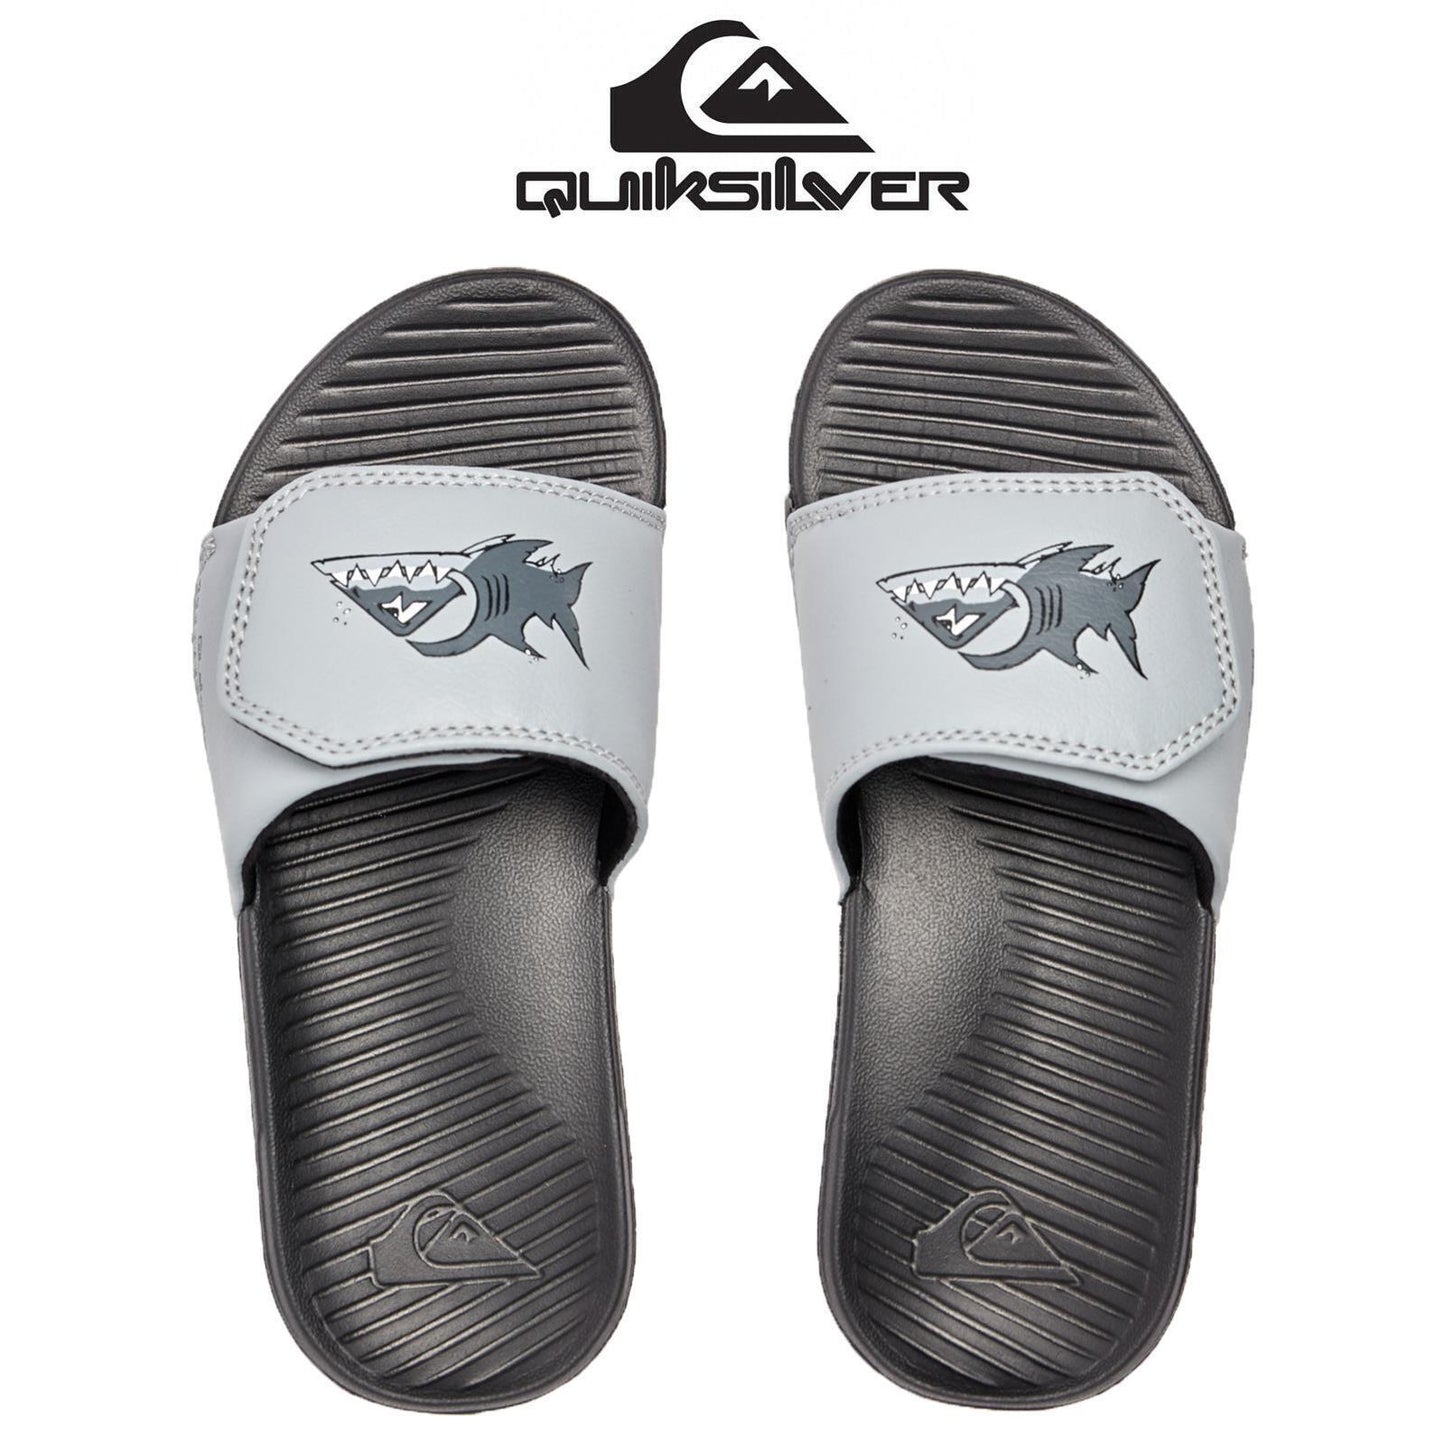 Quiksilver Bright Coast Grey Adjustable Shark Sliders Sandals